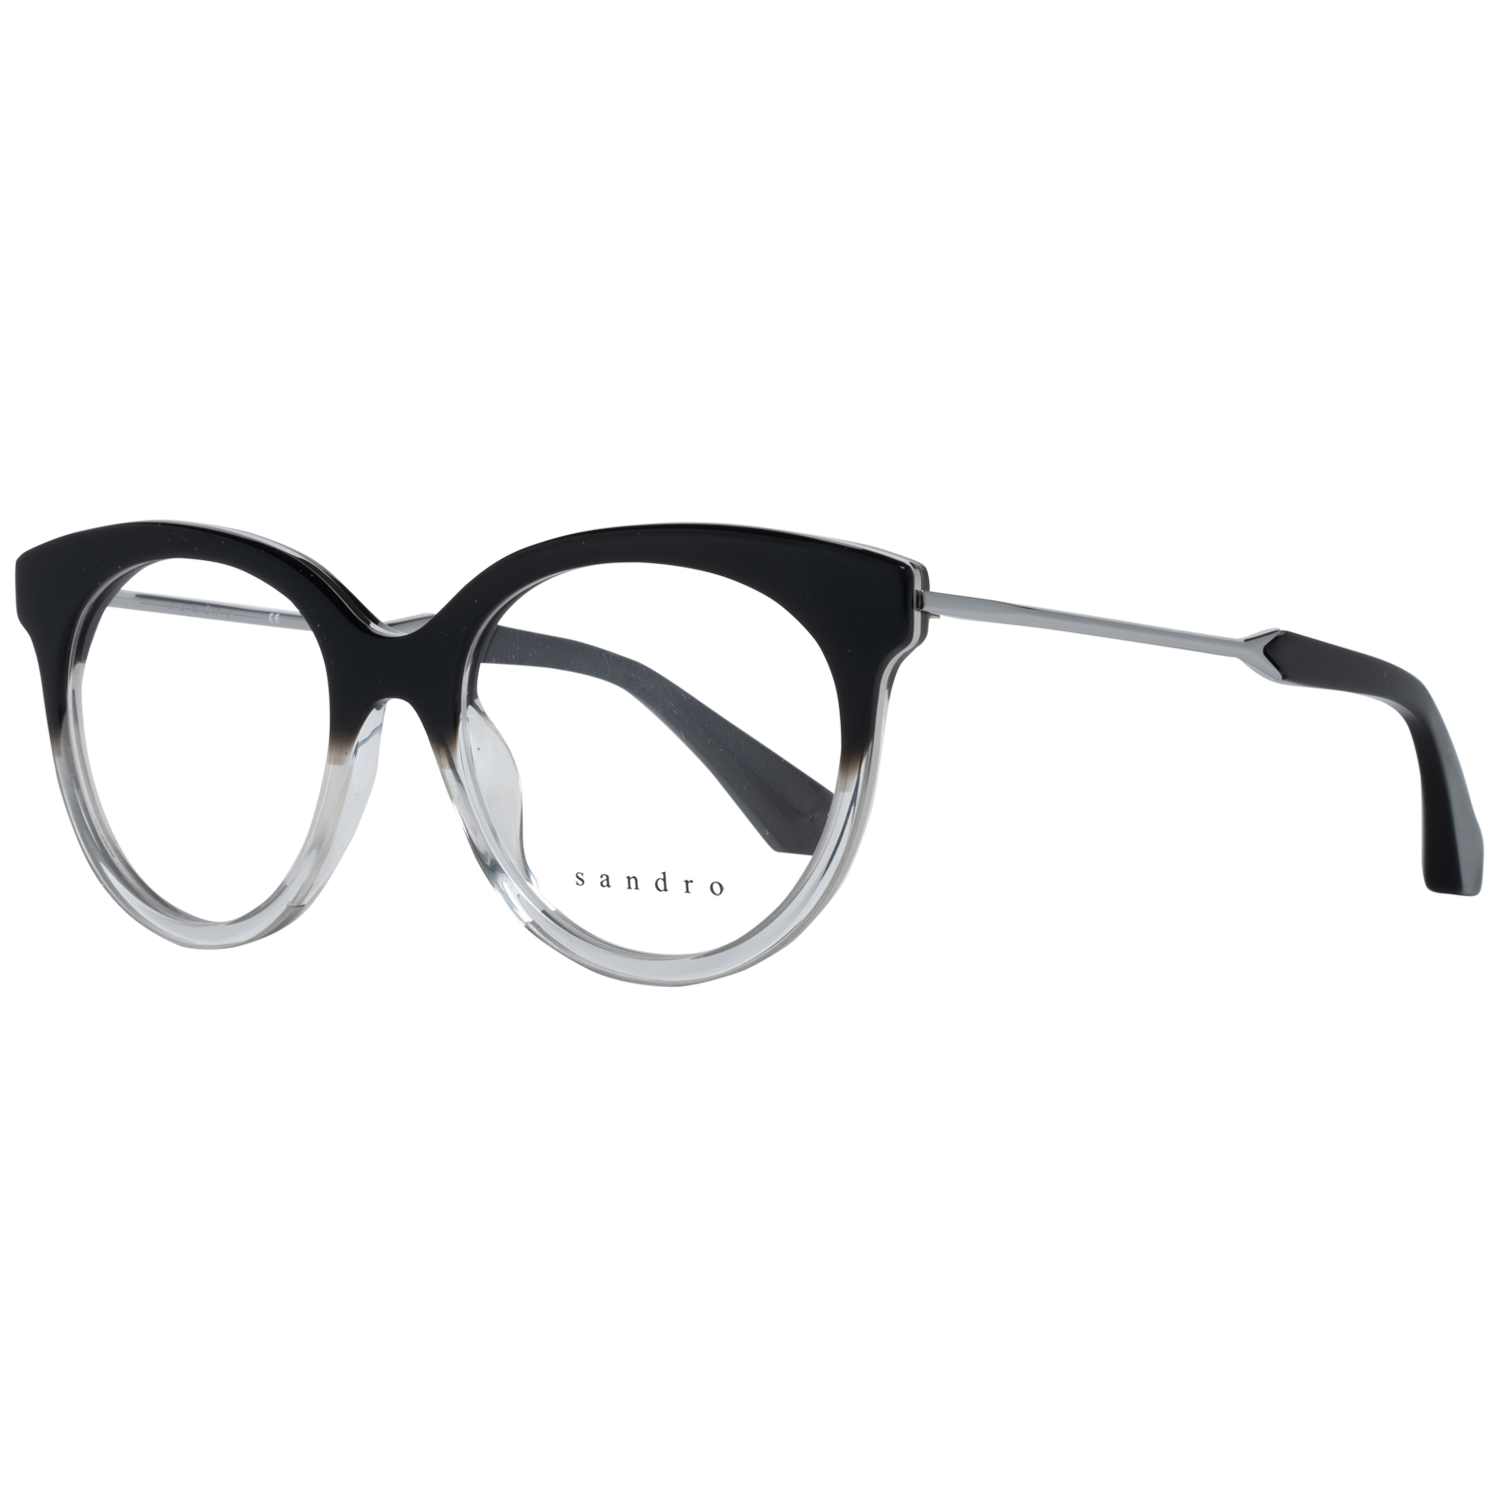 Sandro Frames Sandro Optical Frame SD2000 101 48 Eyeglasses Eyewear UK USA Australia 